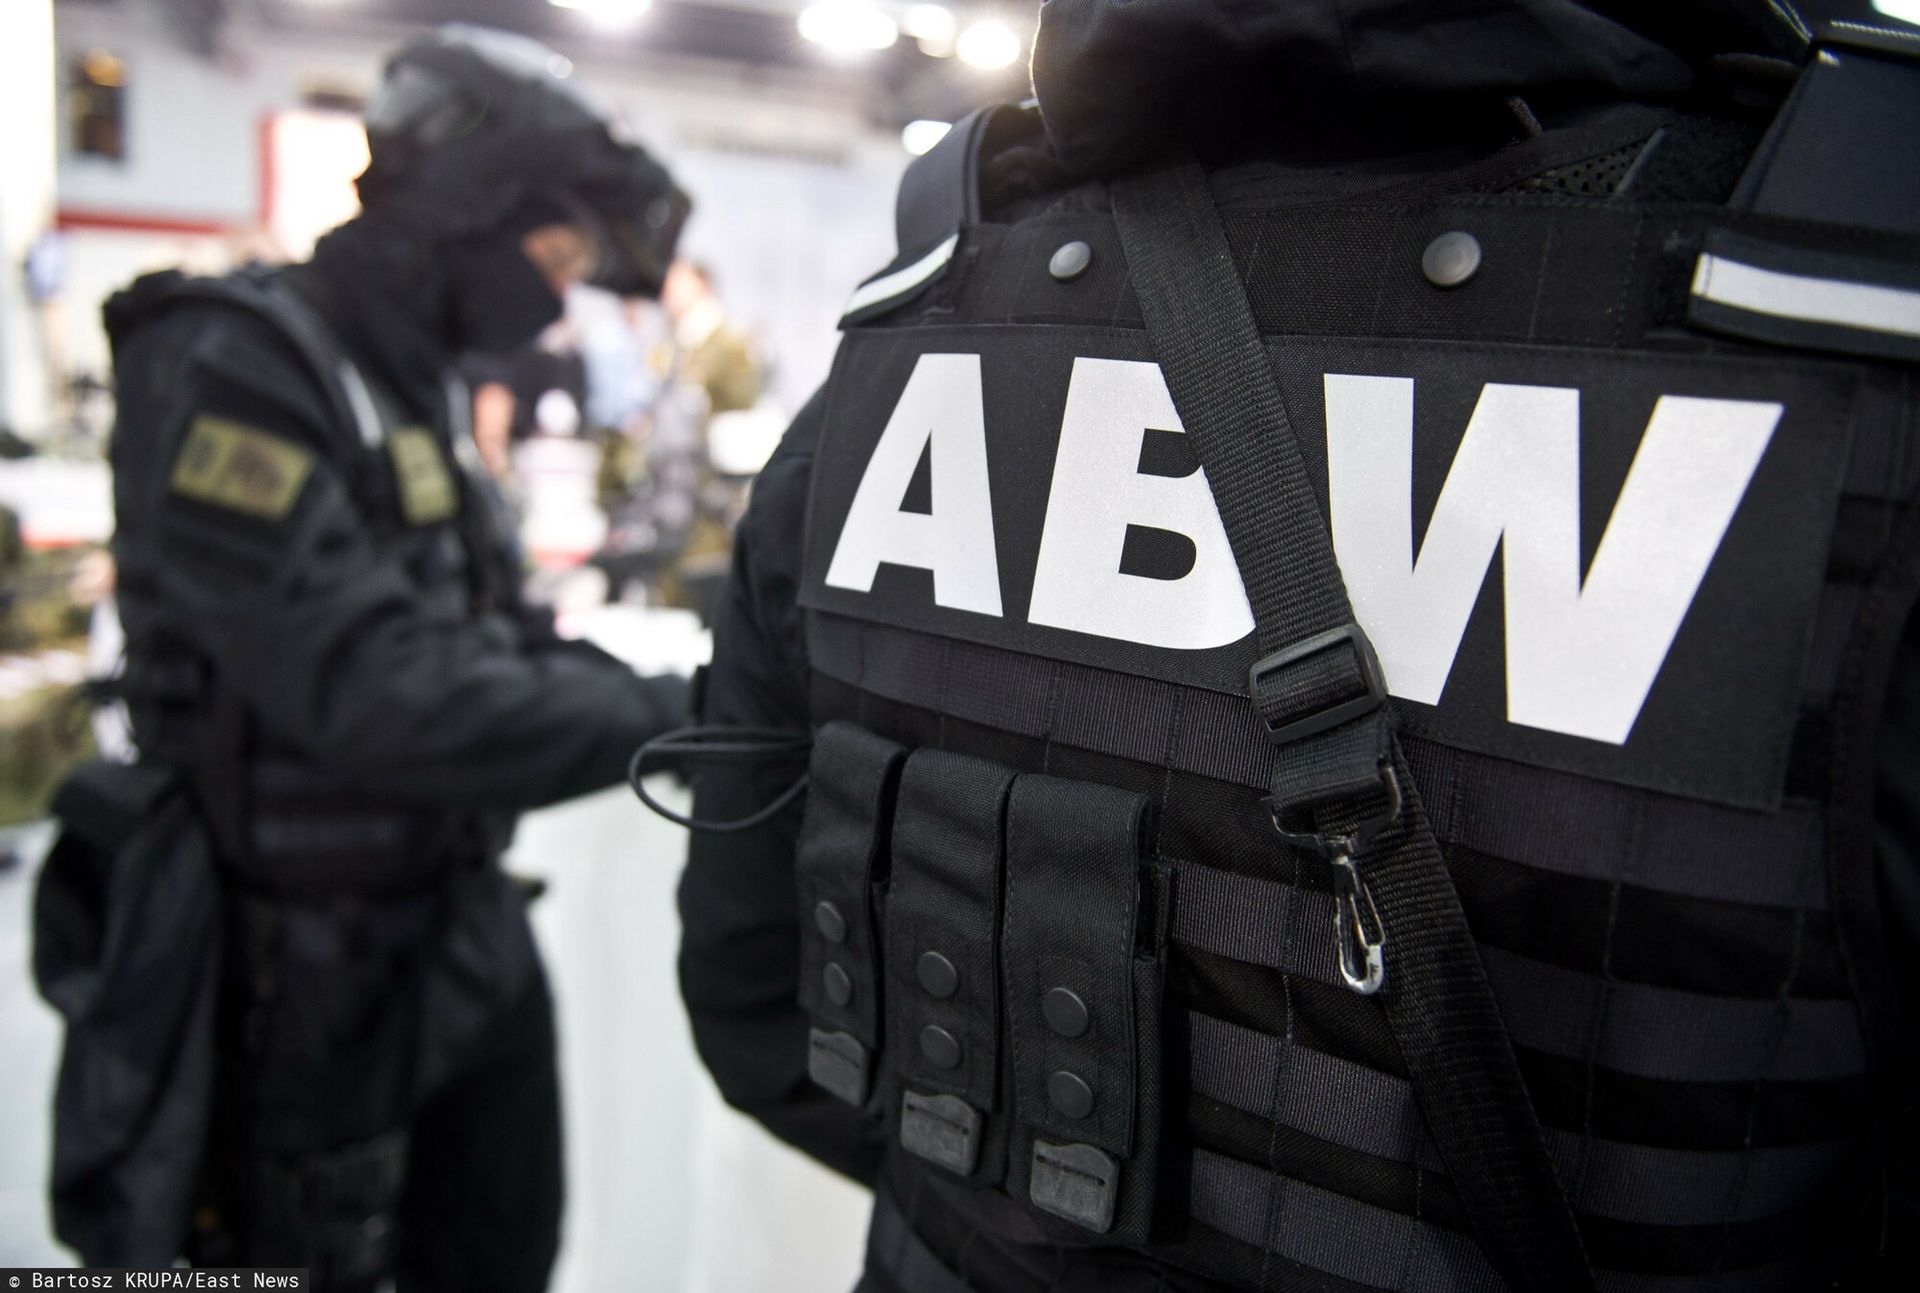 akcja abw. rosyjscy szpiedzy chcieli wpływać na polityków w polsce